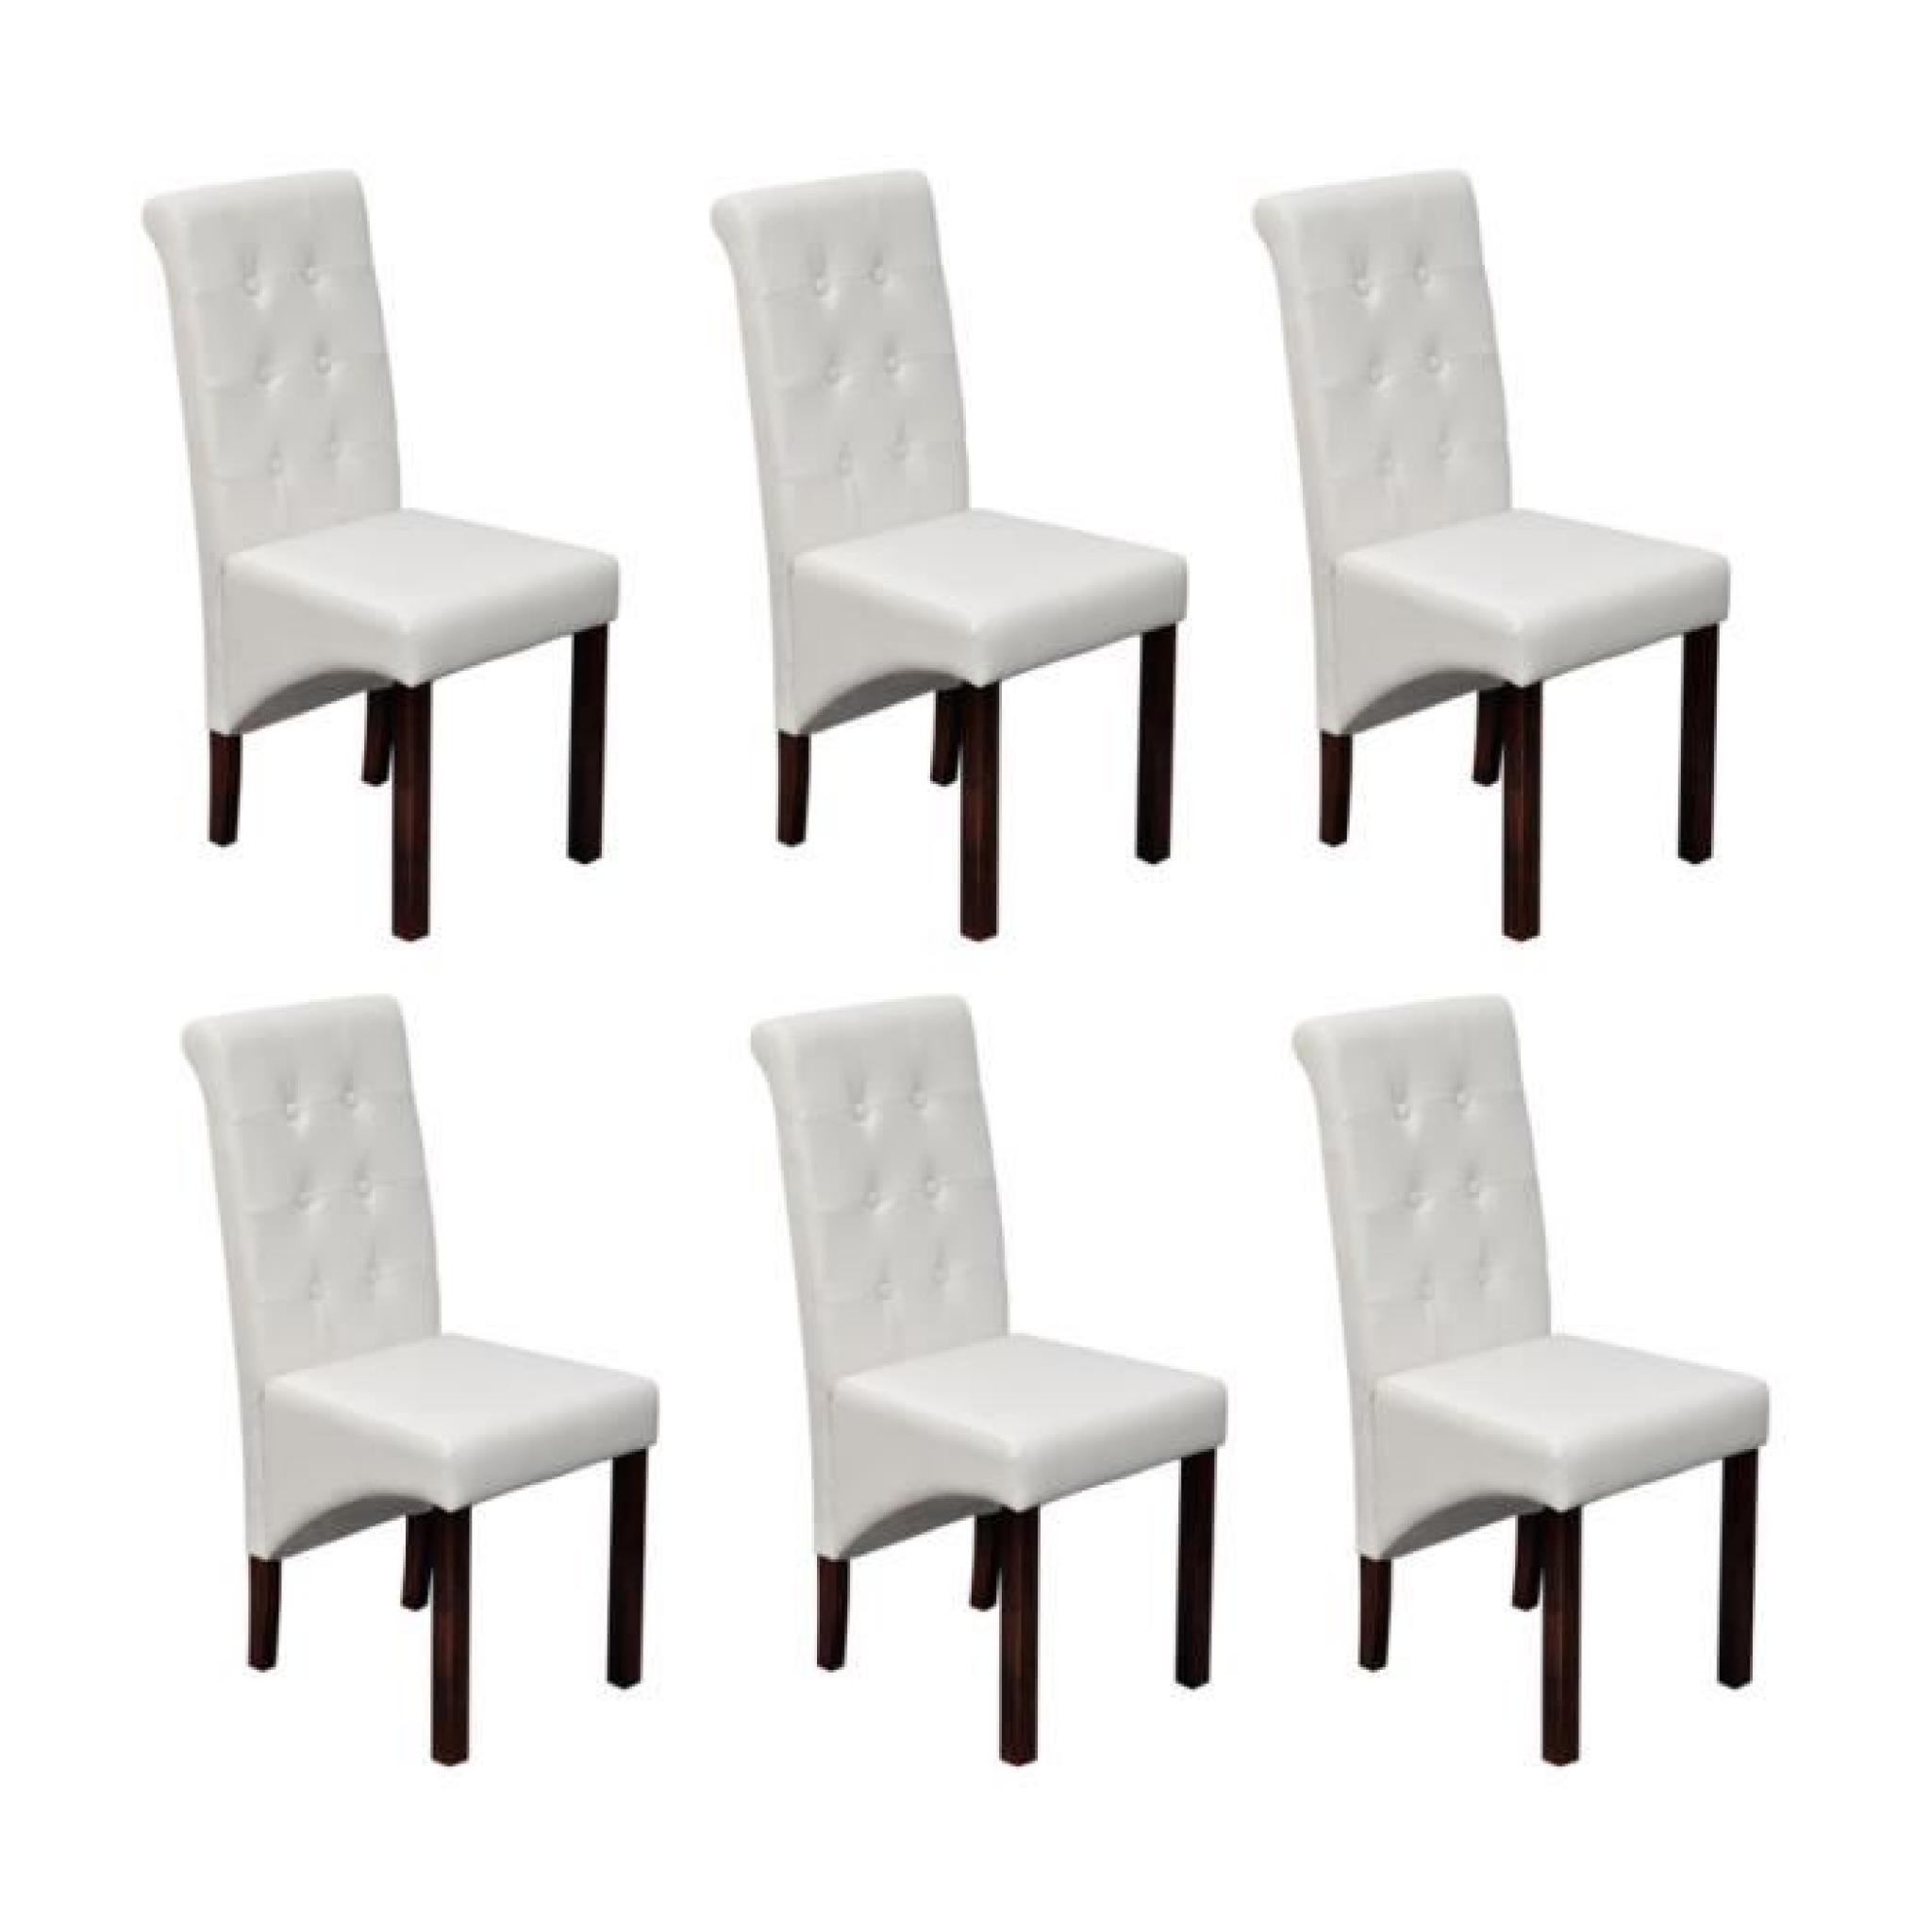 Chaise antique simili cuir blanc (lot de 6)